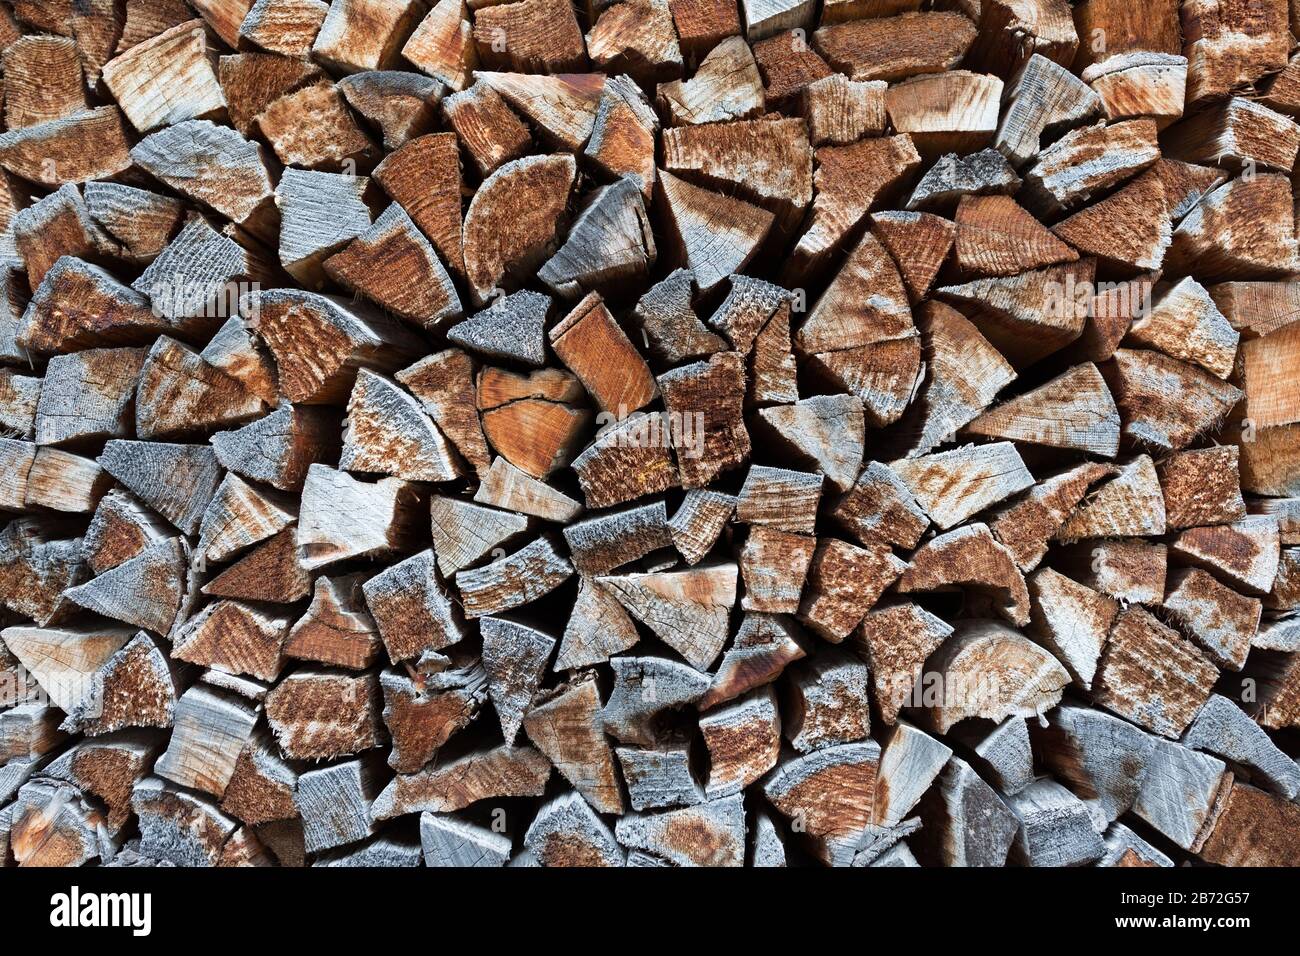 Cierre aislado de madera de fuego apilada / madera cortada - amontonada contra una pared. La mayoría de los registros tienen una forma triangular. Símbolo de calidez, calor y tiempo de invierno. Foto de stock